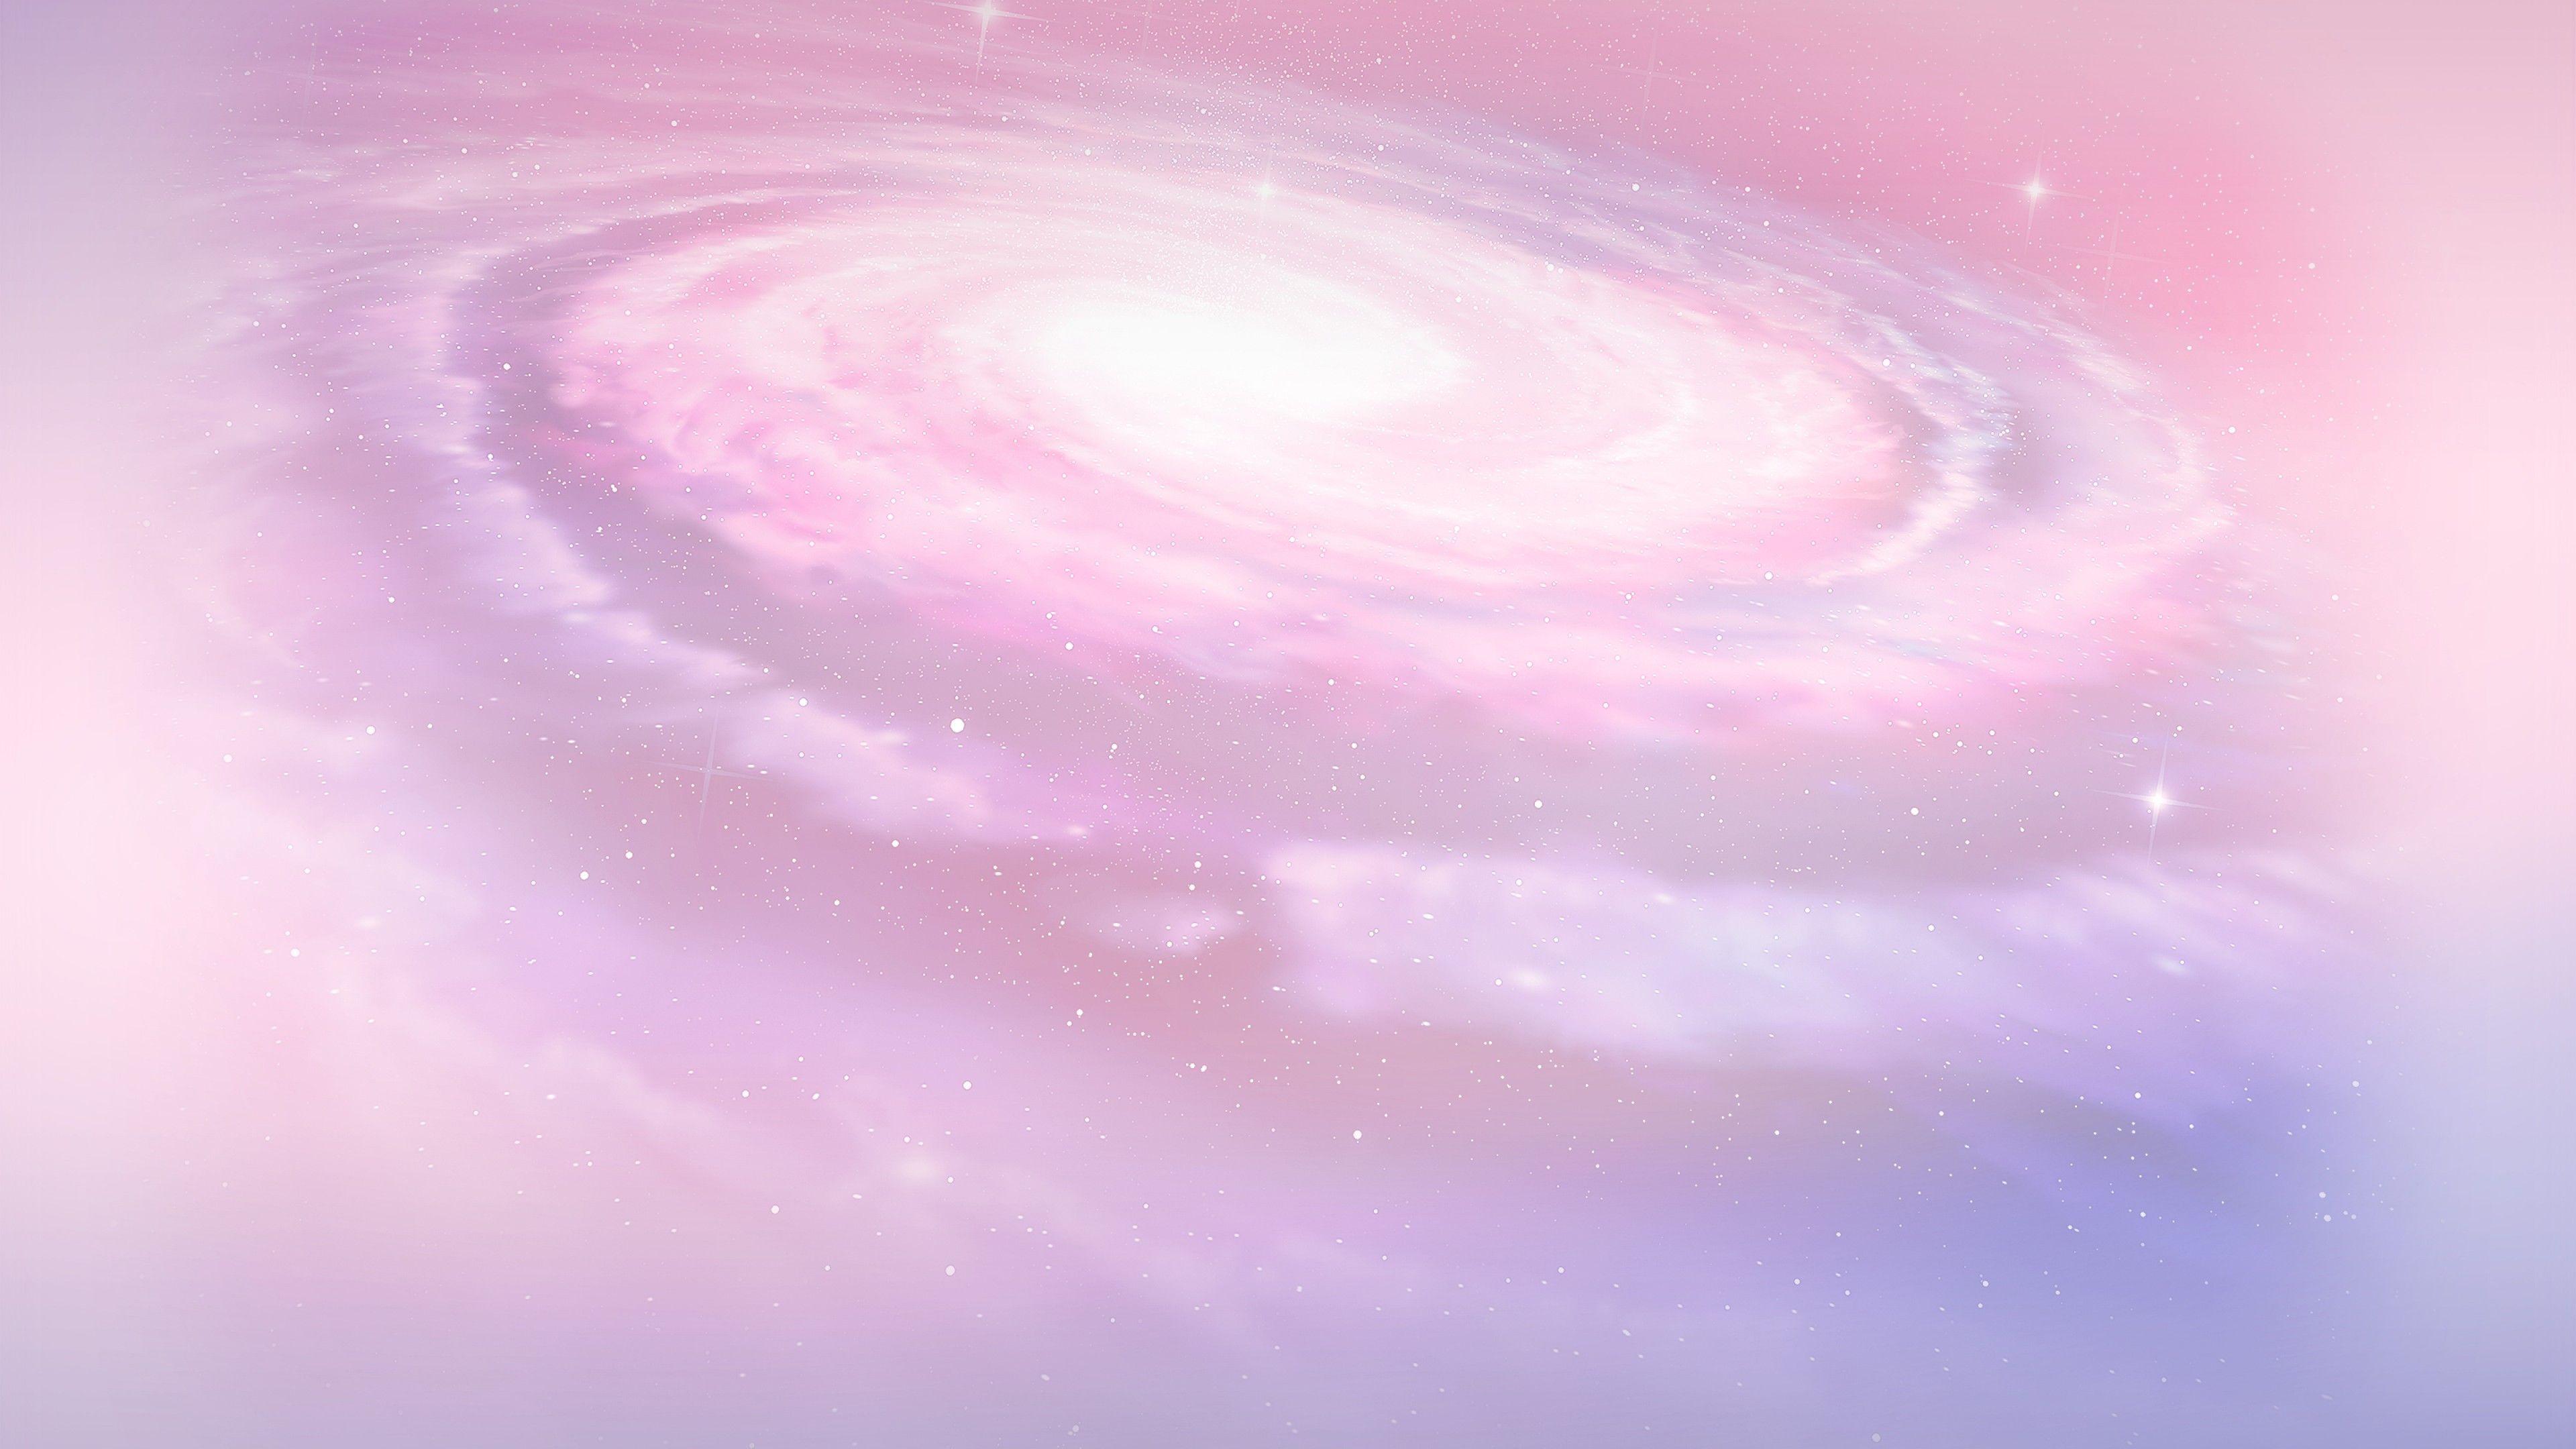 Sắc hồng nhạt của ngân hà khiến cho nó trở nên tinh tế và bề ngoài đẹp mắt hơn bao giờ hết. Hãy ngắm nhìn bức ảnh nền ngân hà mang màu sắc hồng nhạt này, để cảm nhận được tình cảm mềm mại và lãng mạn đến từ vũ trụ.